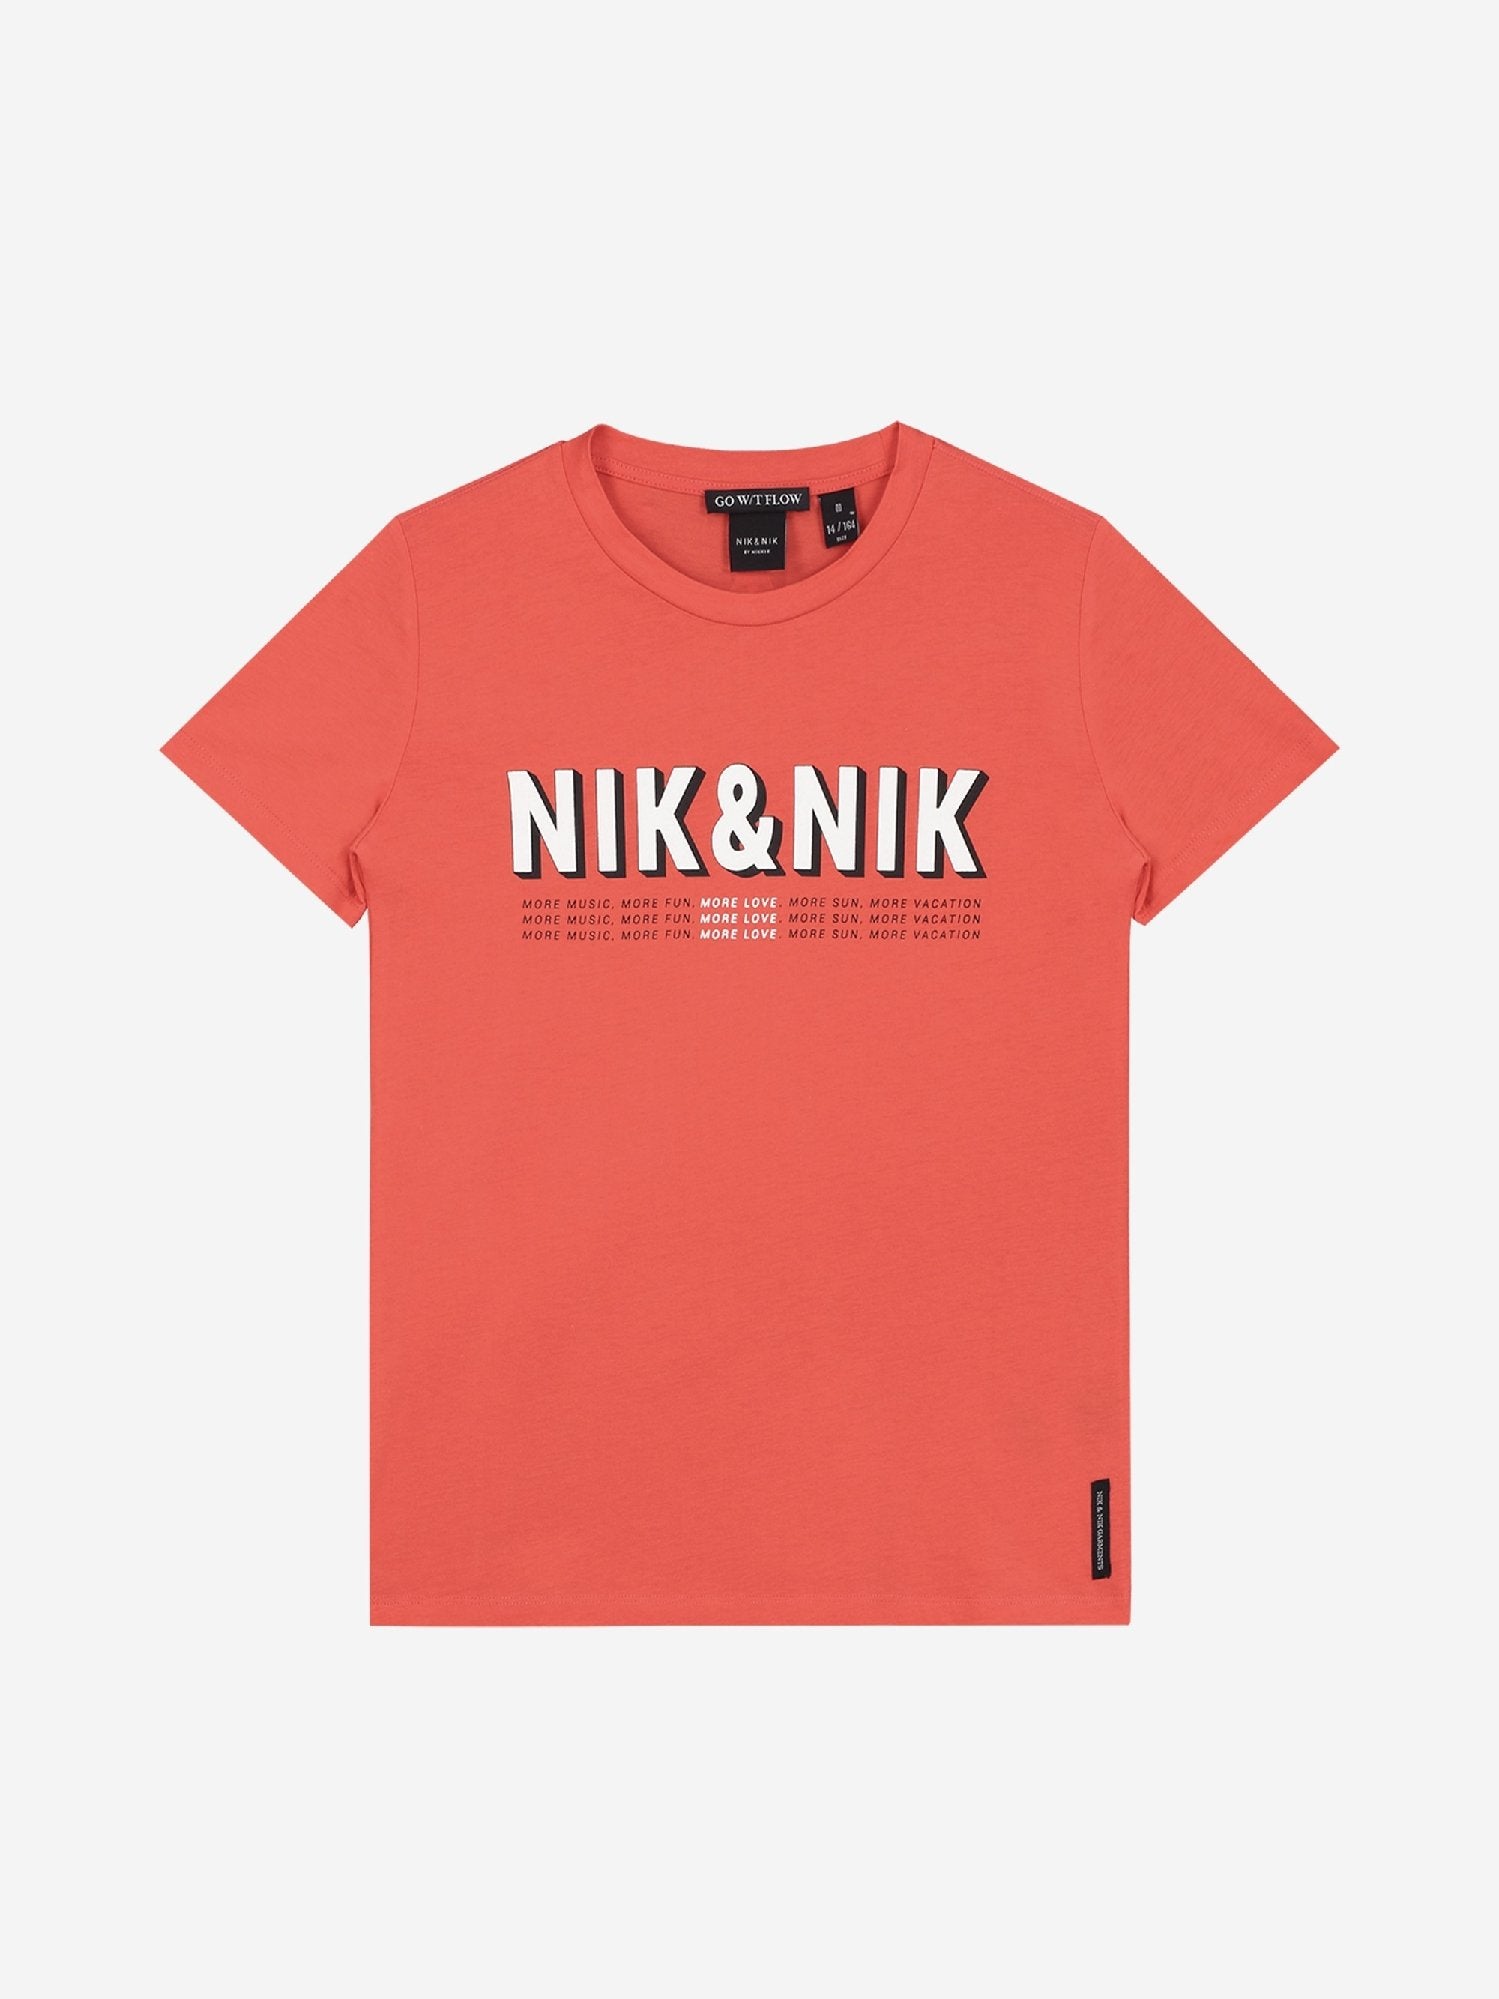 Meisjes More Love T-shirt van Nik & Nik in de kleur Rood in maat 176.